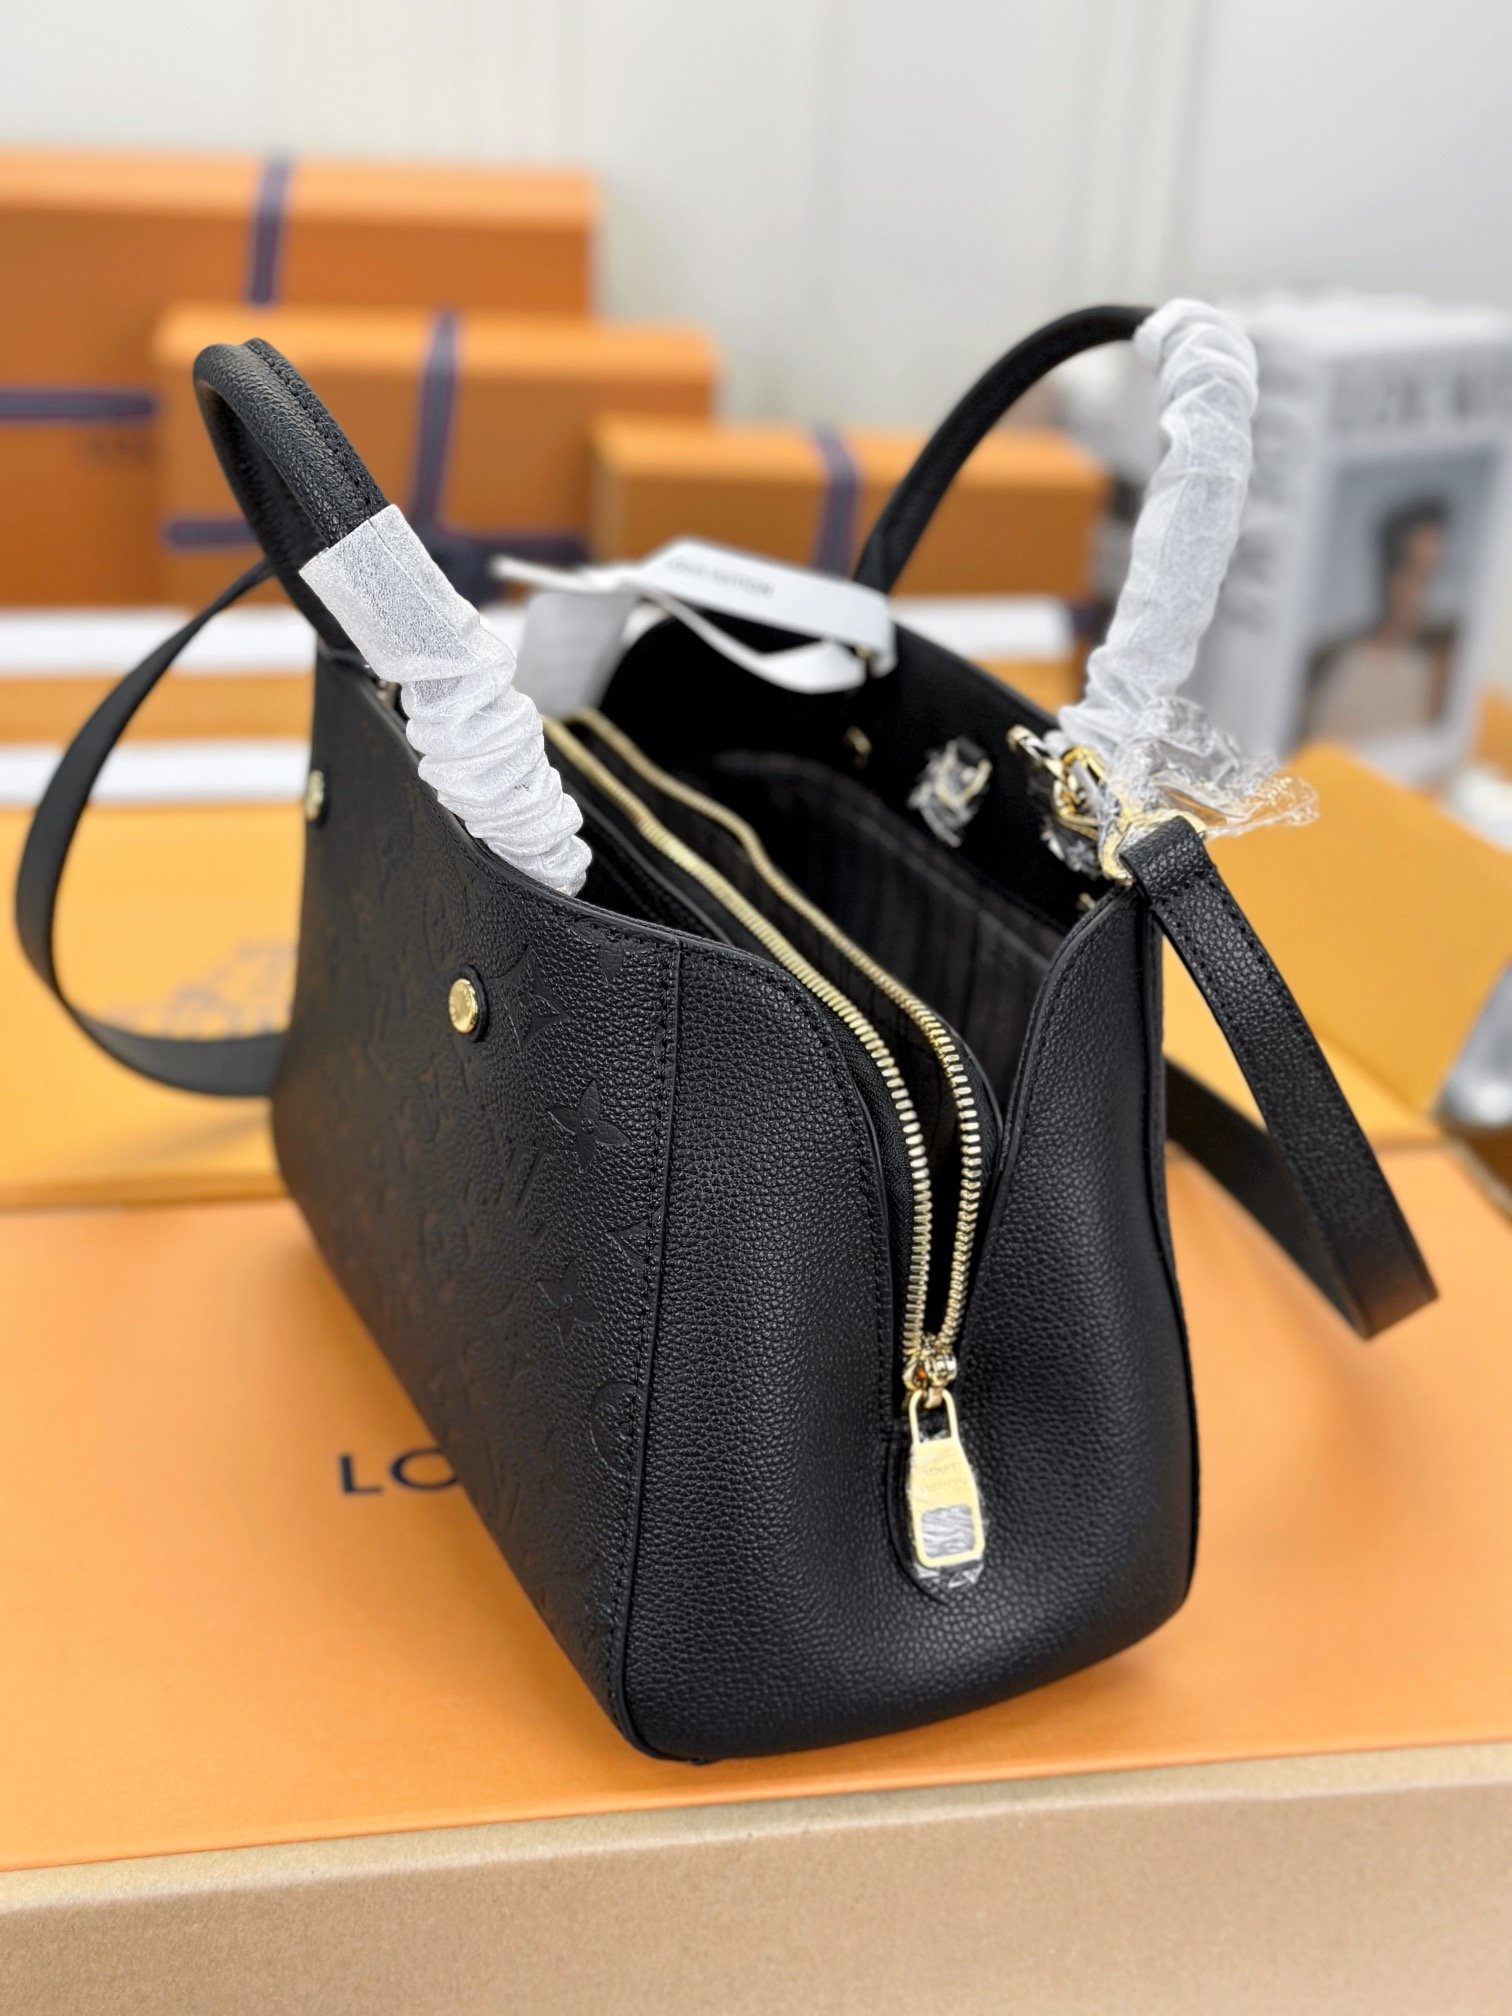 顶级原单M41053黑色小巧精致的迷你款Montaigne手袋拥有多种携带方式是商务女士的理想便携包款其